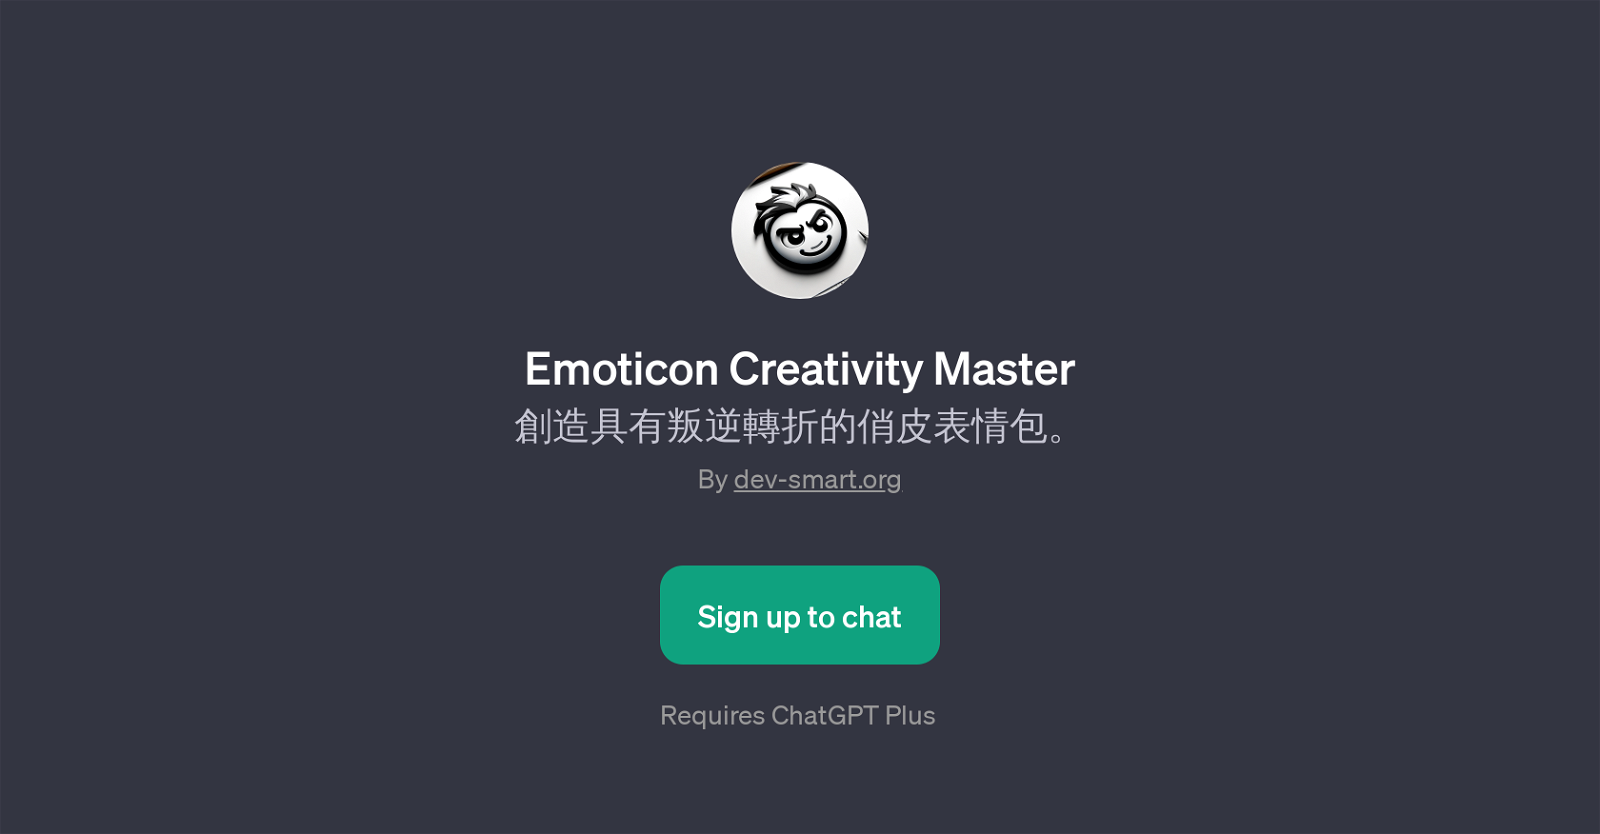 Emoticon Creativity Master website